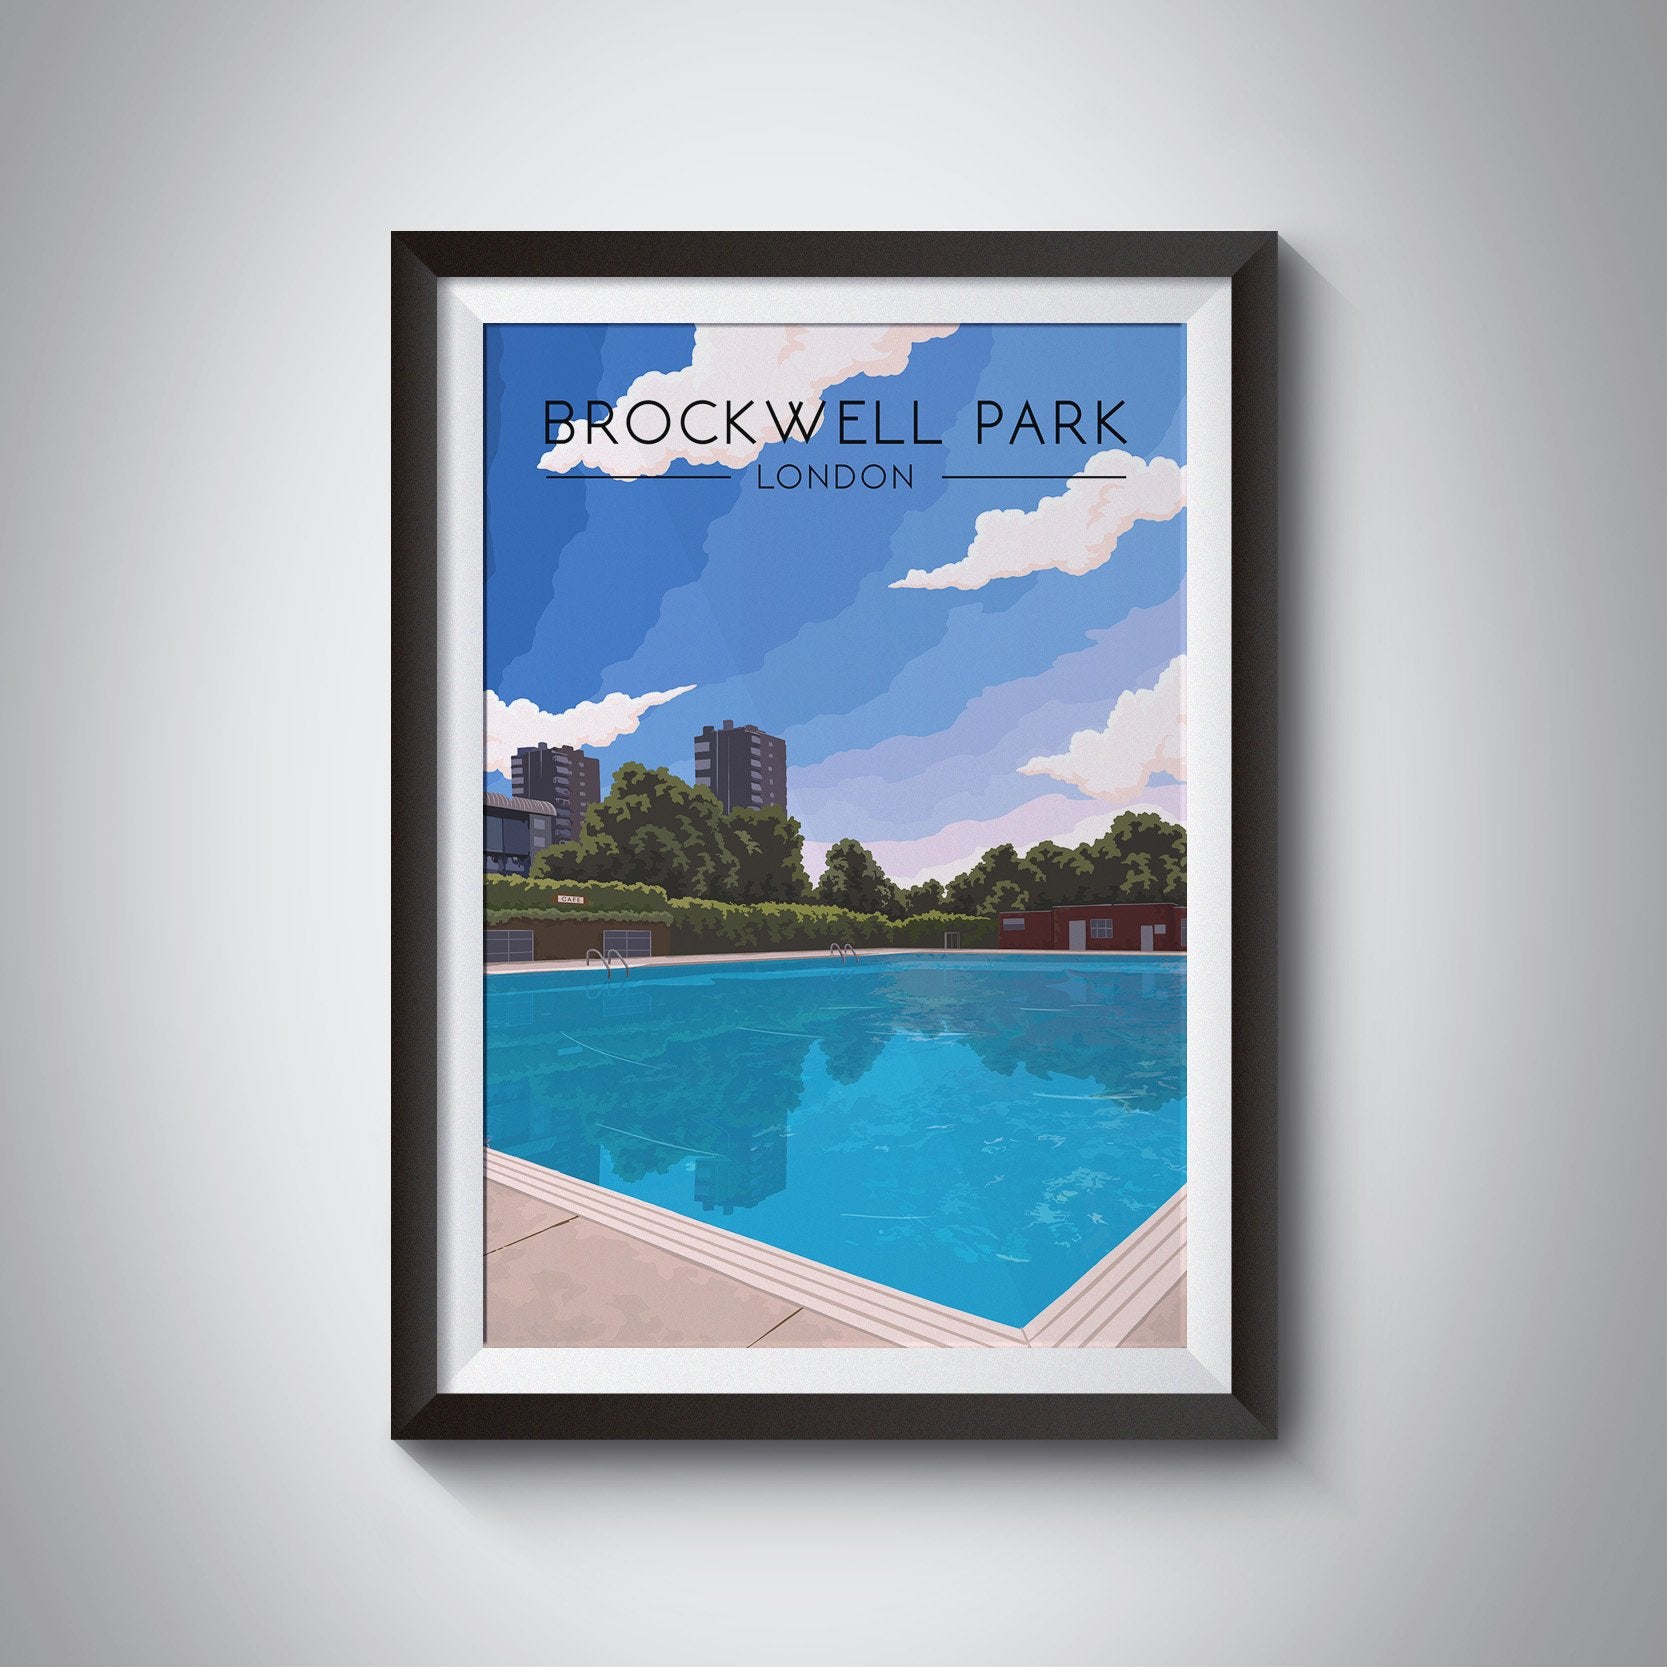 Brockwell Park London Travel Poster